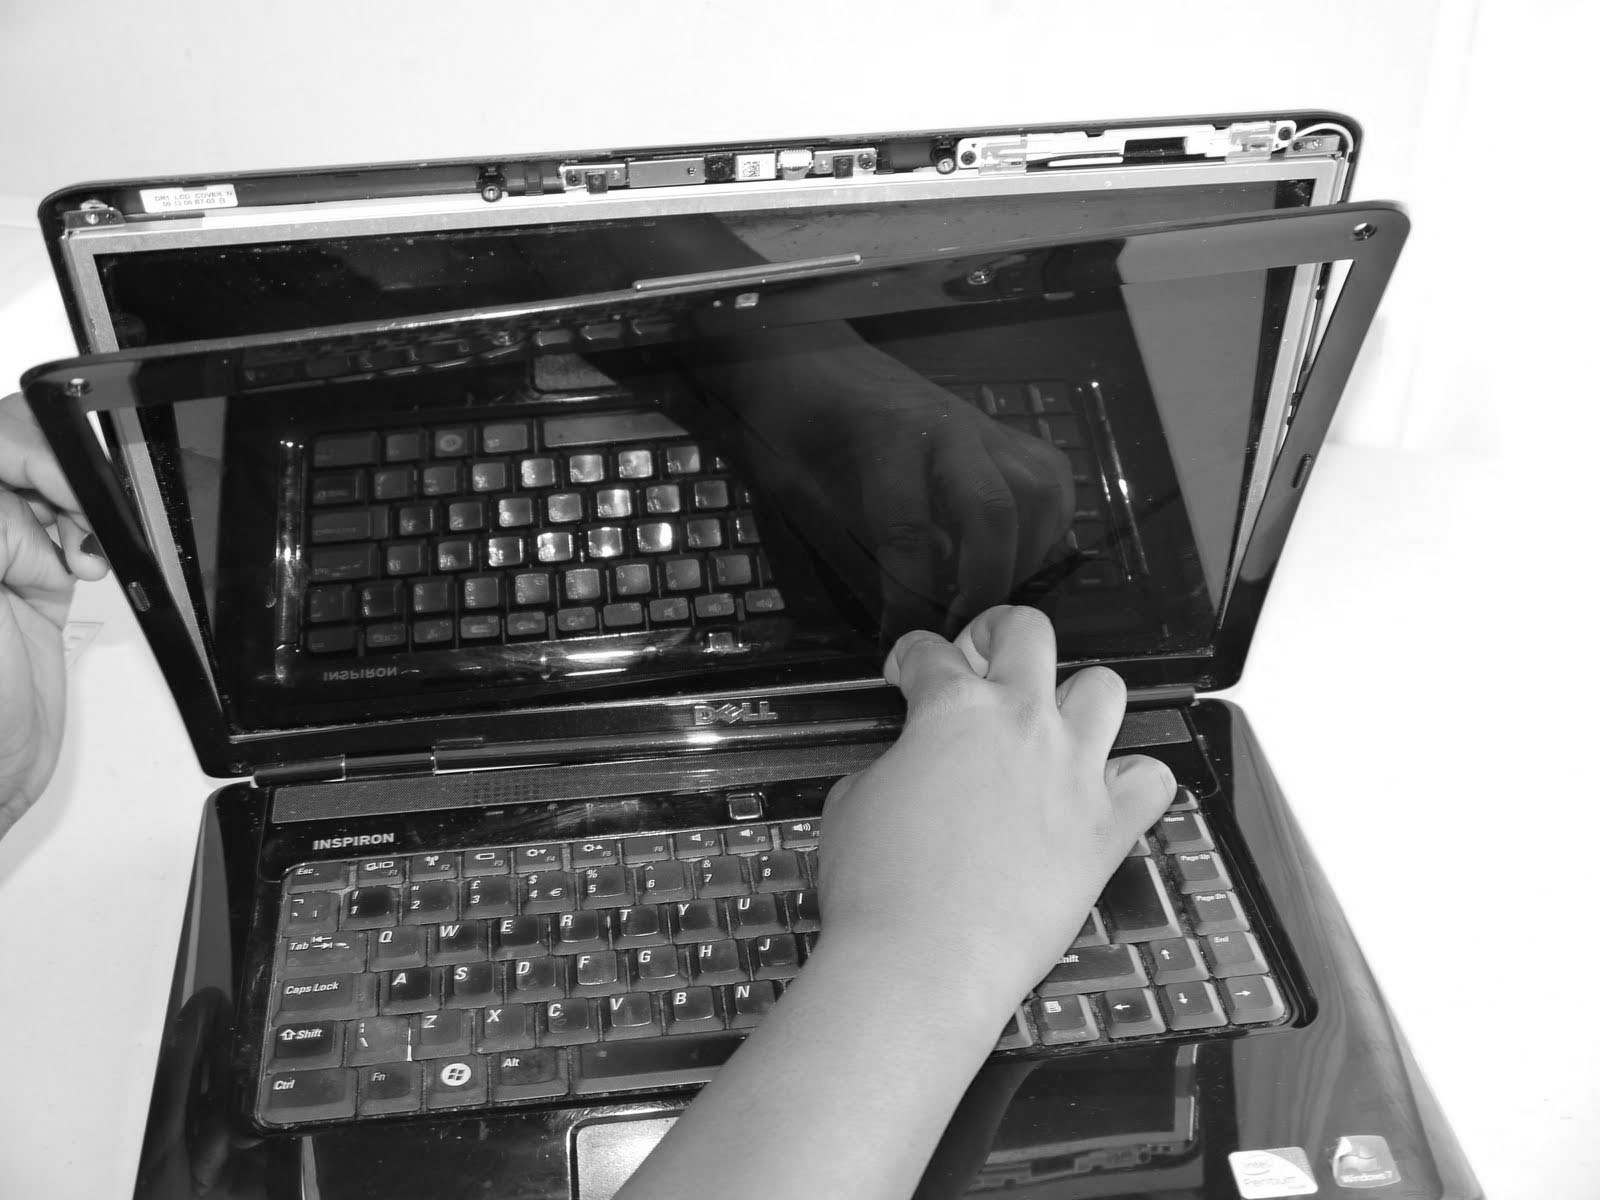 lenovo laptop screen, screen damage, screen repair, screen broken, screen repair images